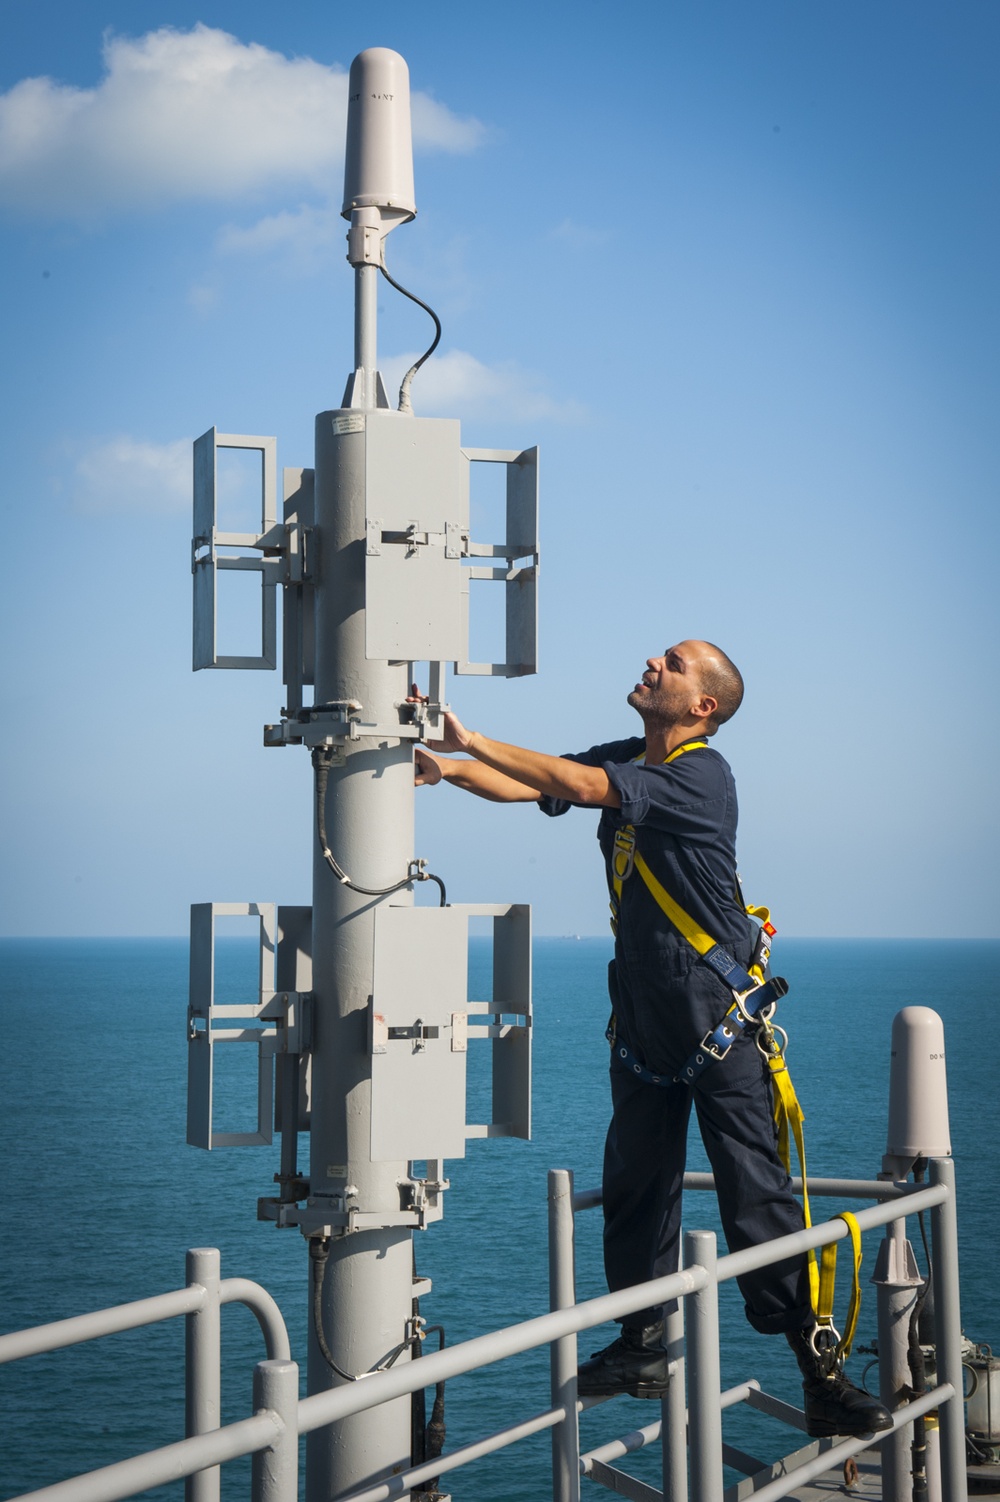 USS Carl Vinson Sailor inspects an antenna